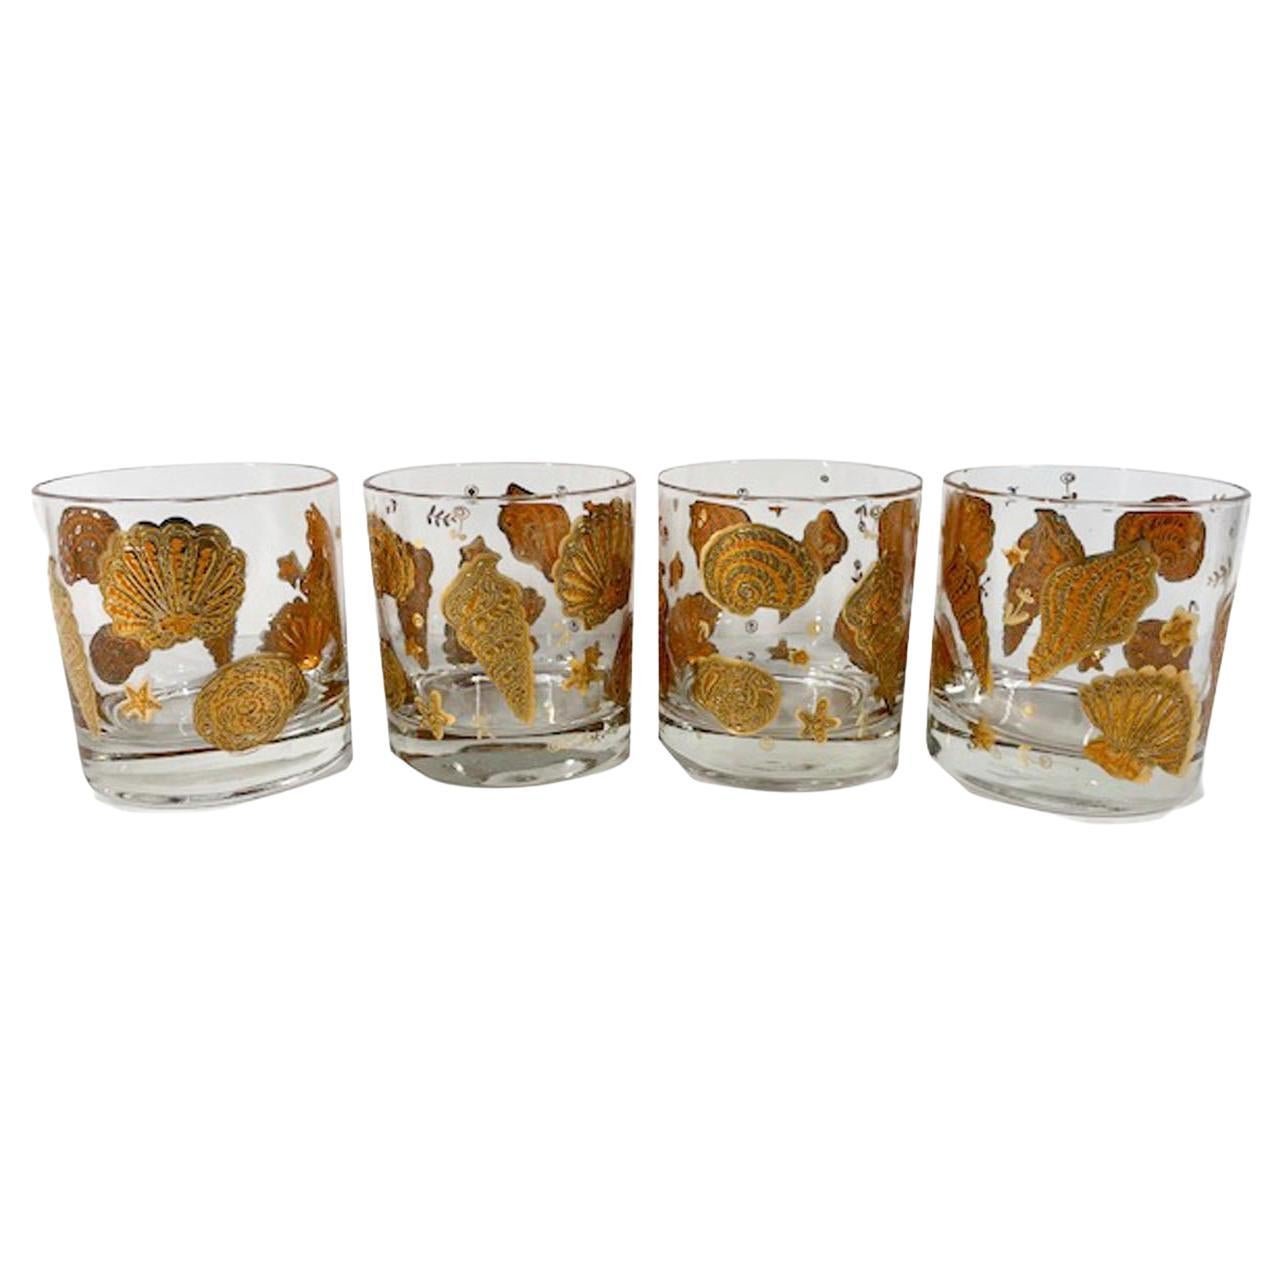 Vier Würfelgläser aus Glaswaren mit Gold- und Orangemarin-Muster